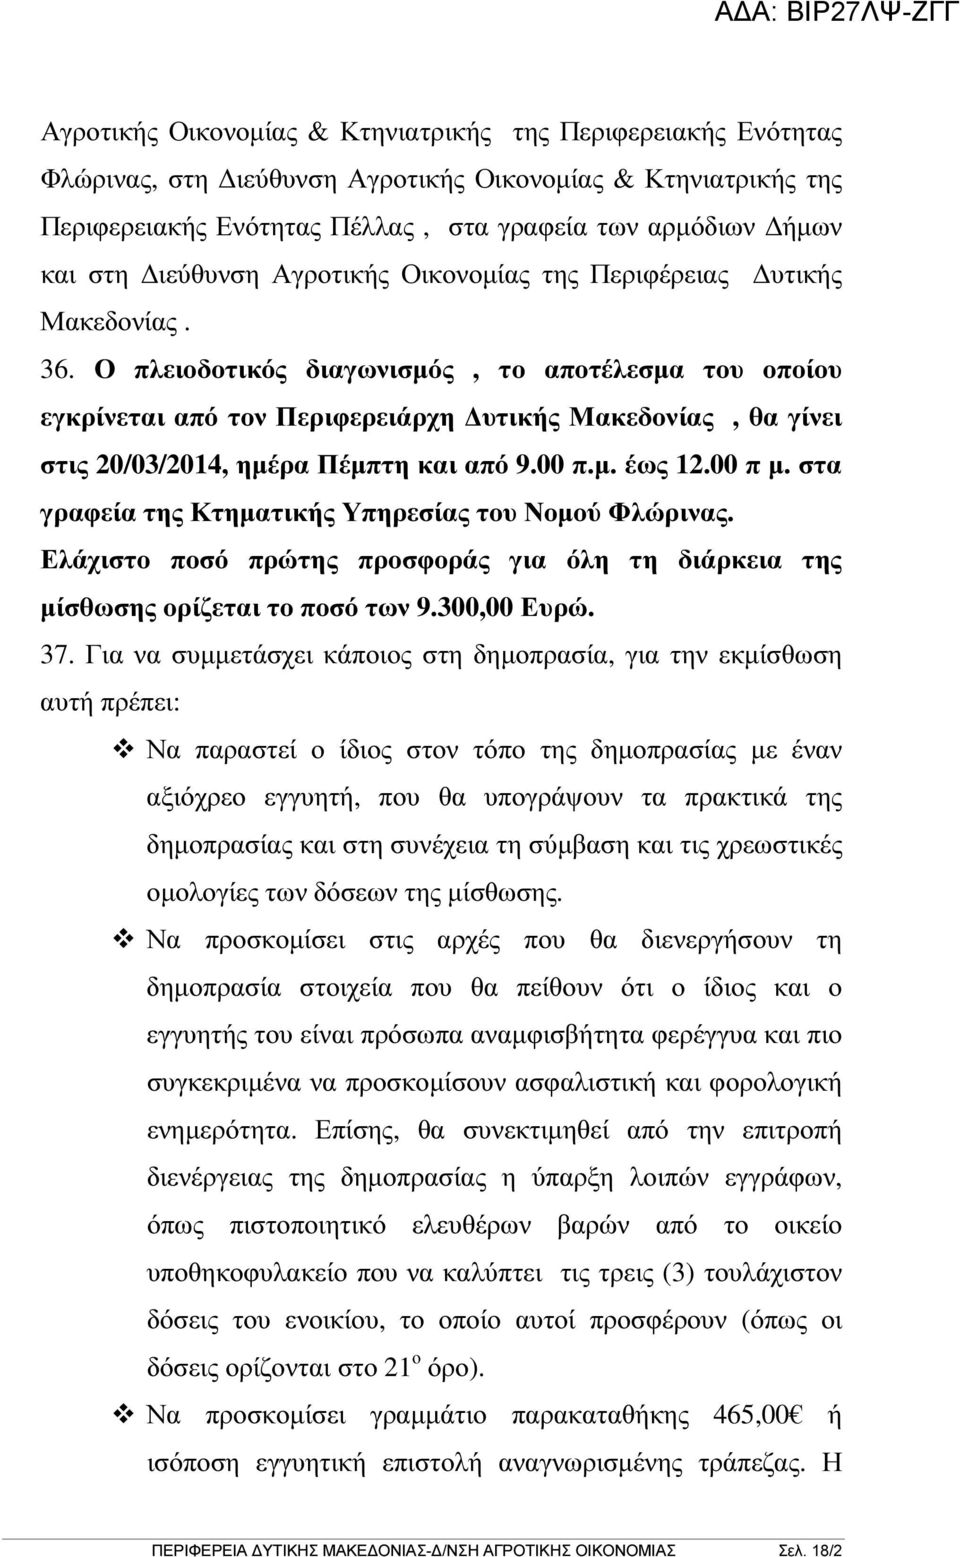 Ο πλειοδοτικός διαγωνισµός, το αποτέλεσµα του οποίου εγκρίνεται από τον Περιφερειάρχη υτικής Μακεδονίας, θα γίνει στις 20/03/2014, ηµέρα Πέµπτη και από 9.00 π.µ. έως 12.00 π µ.